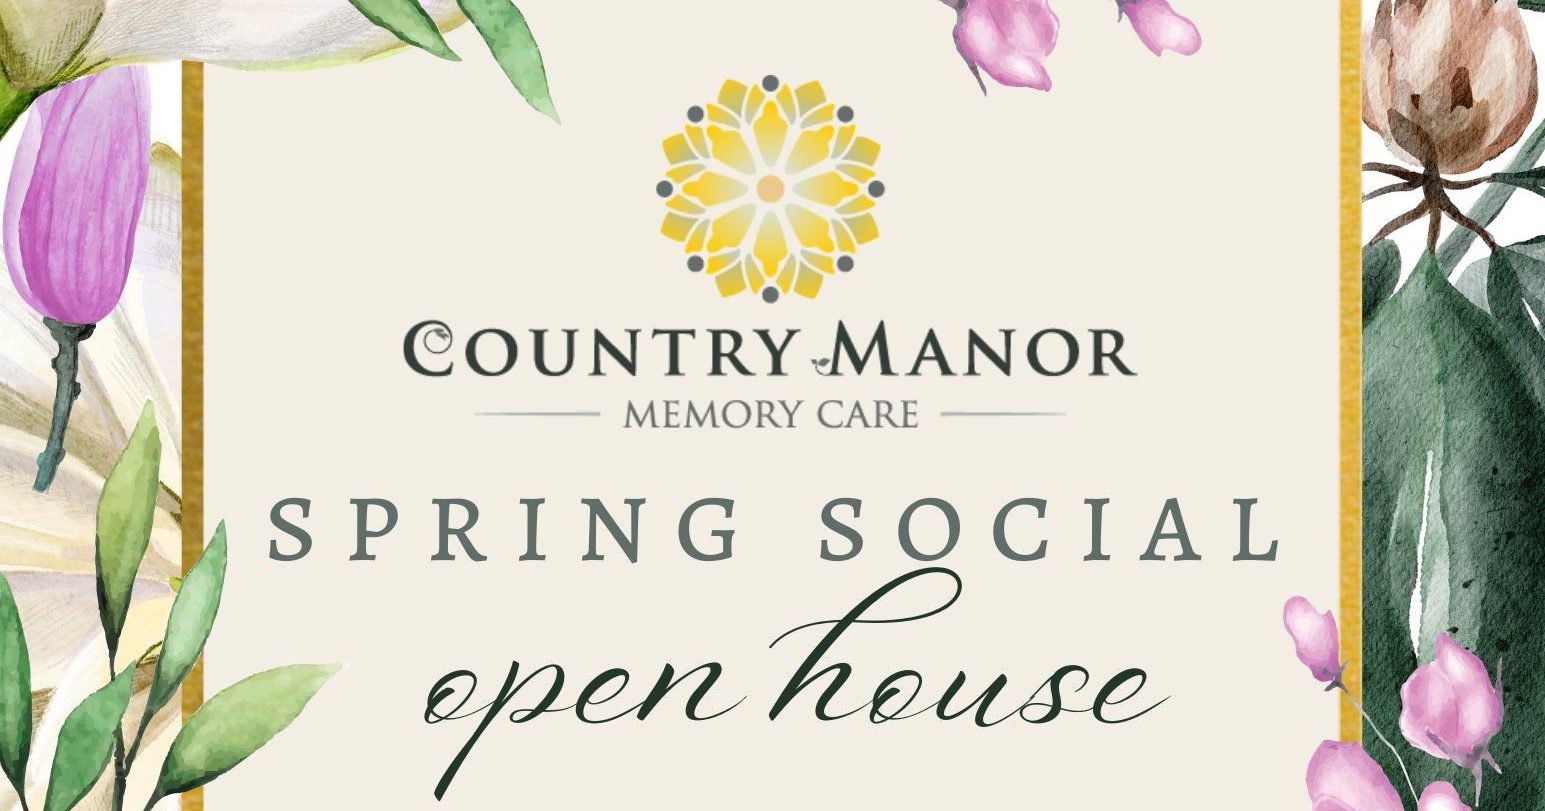 Spring Social Open House